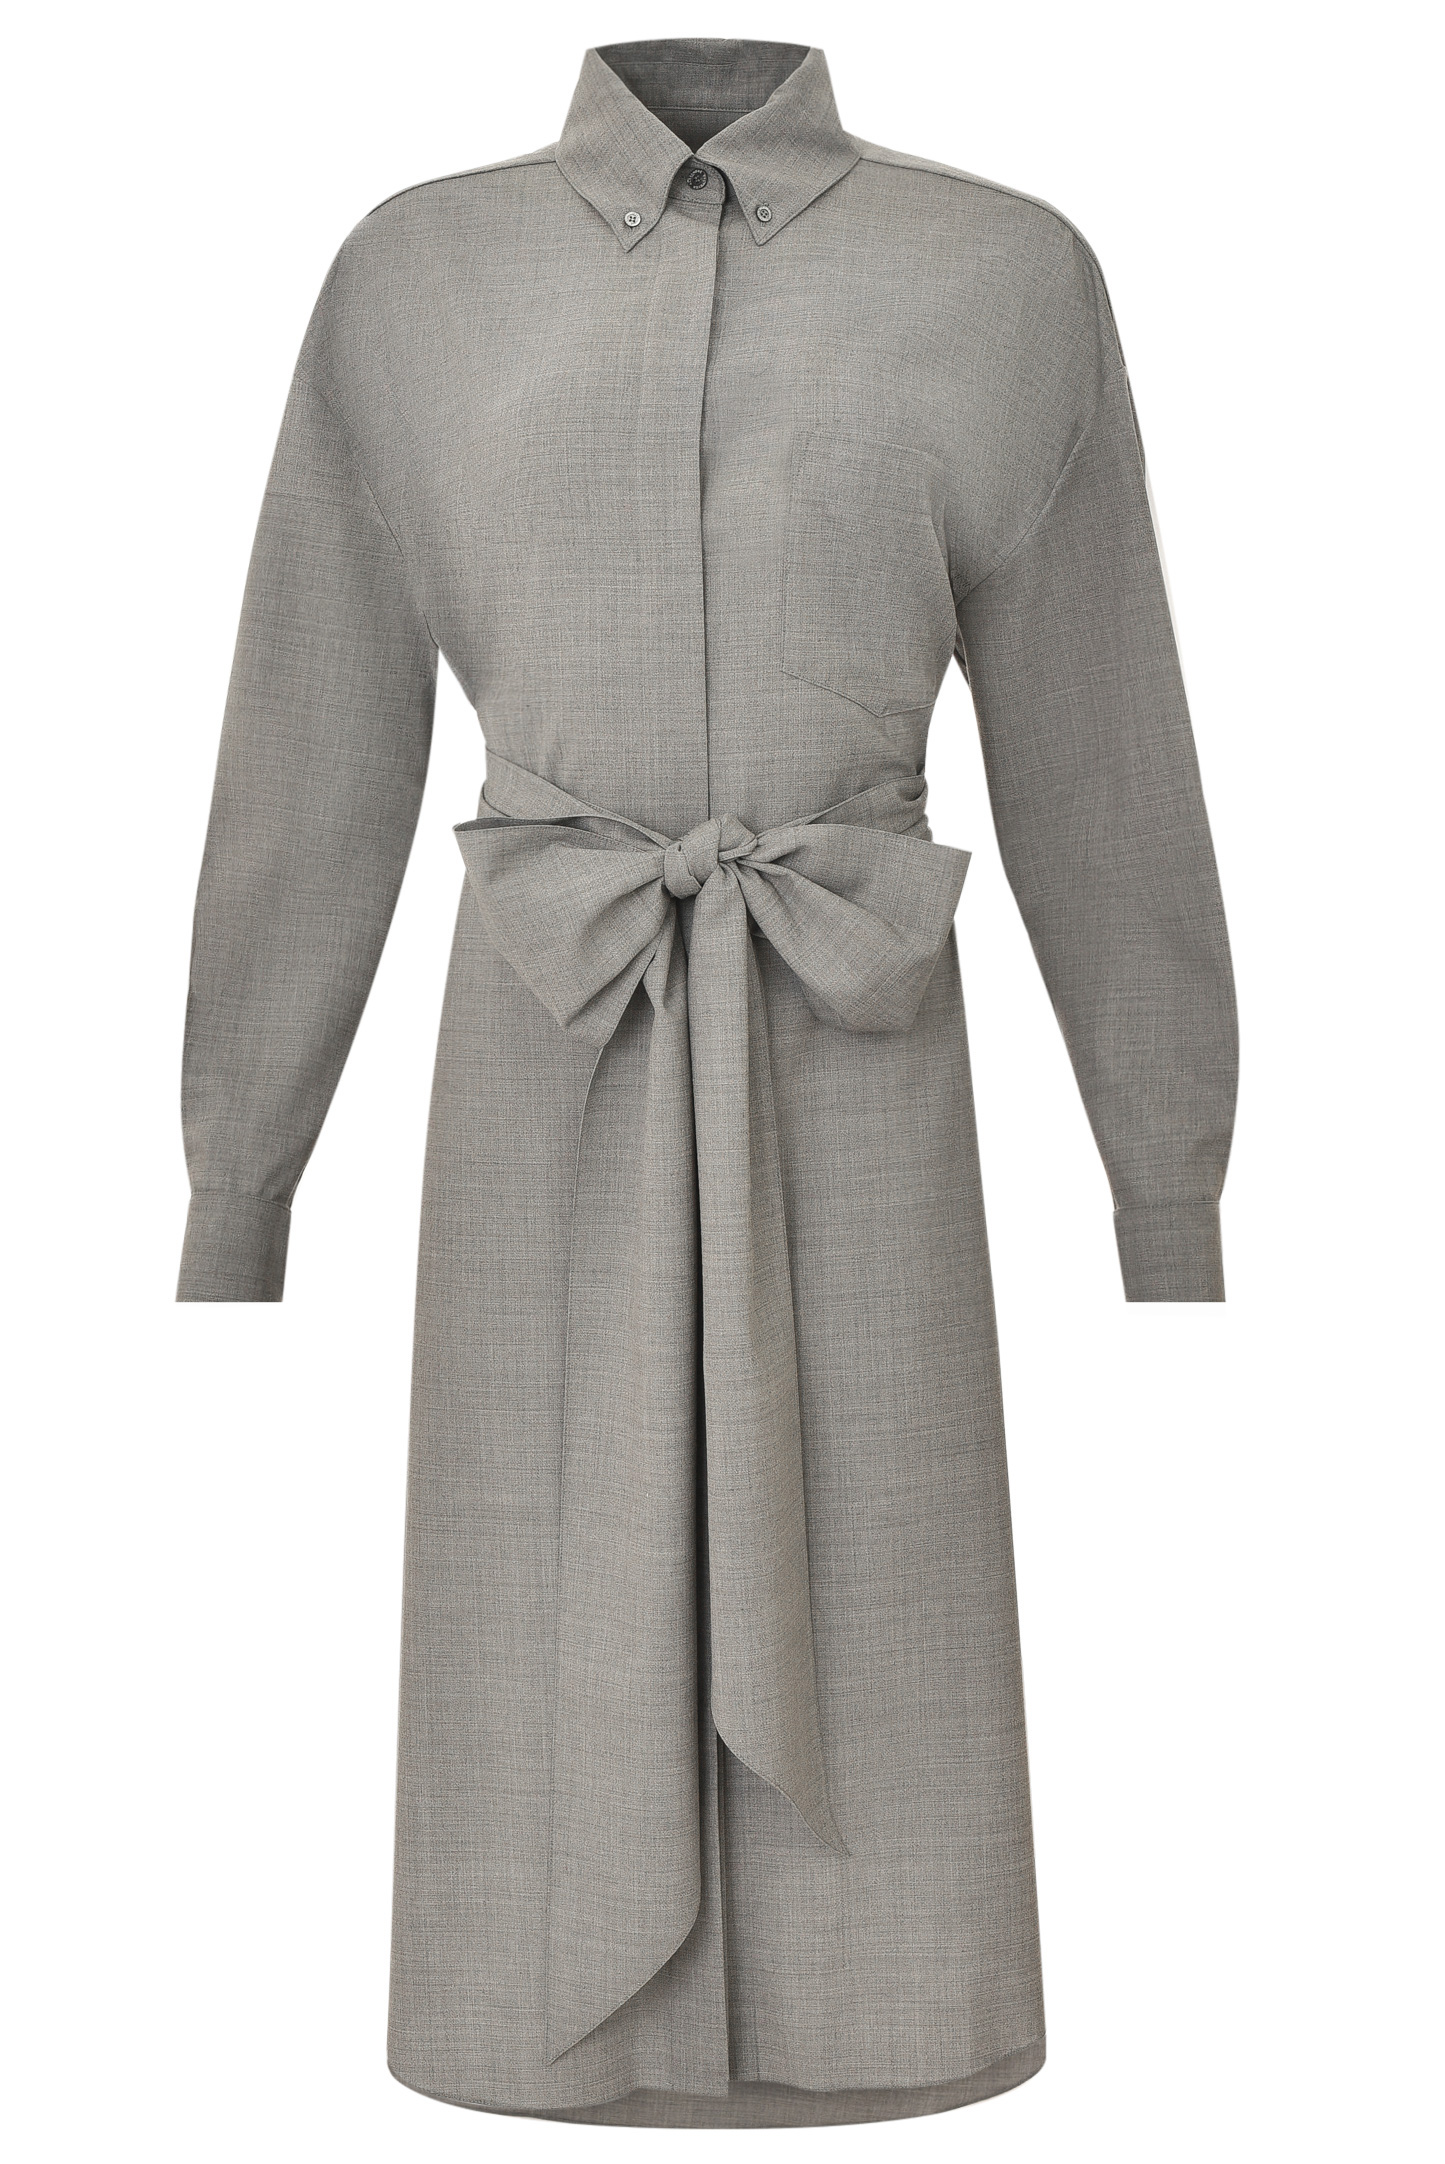 Платье ALEXANDRE VAUTHIER 213DR1521, цвет: Серый, Женский